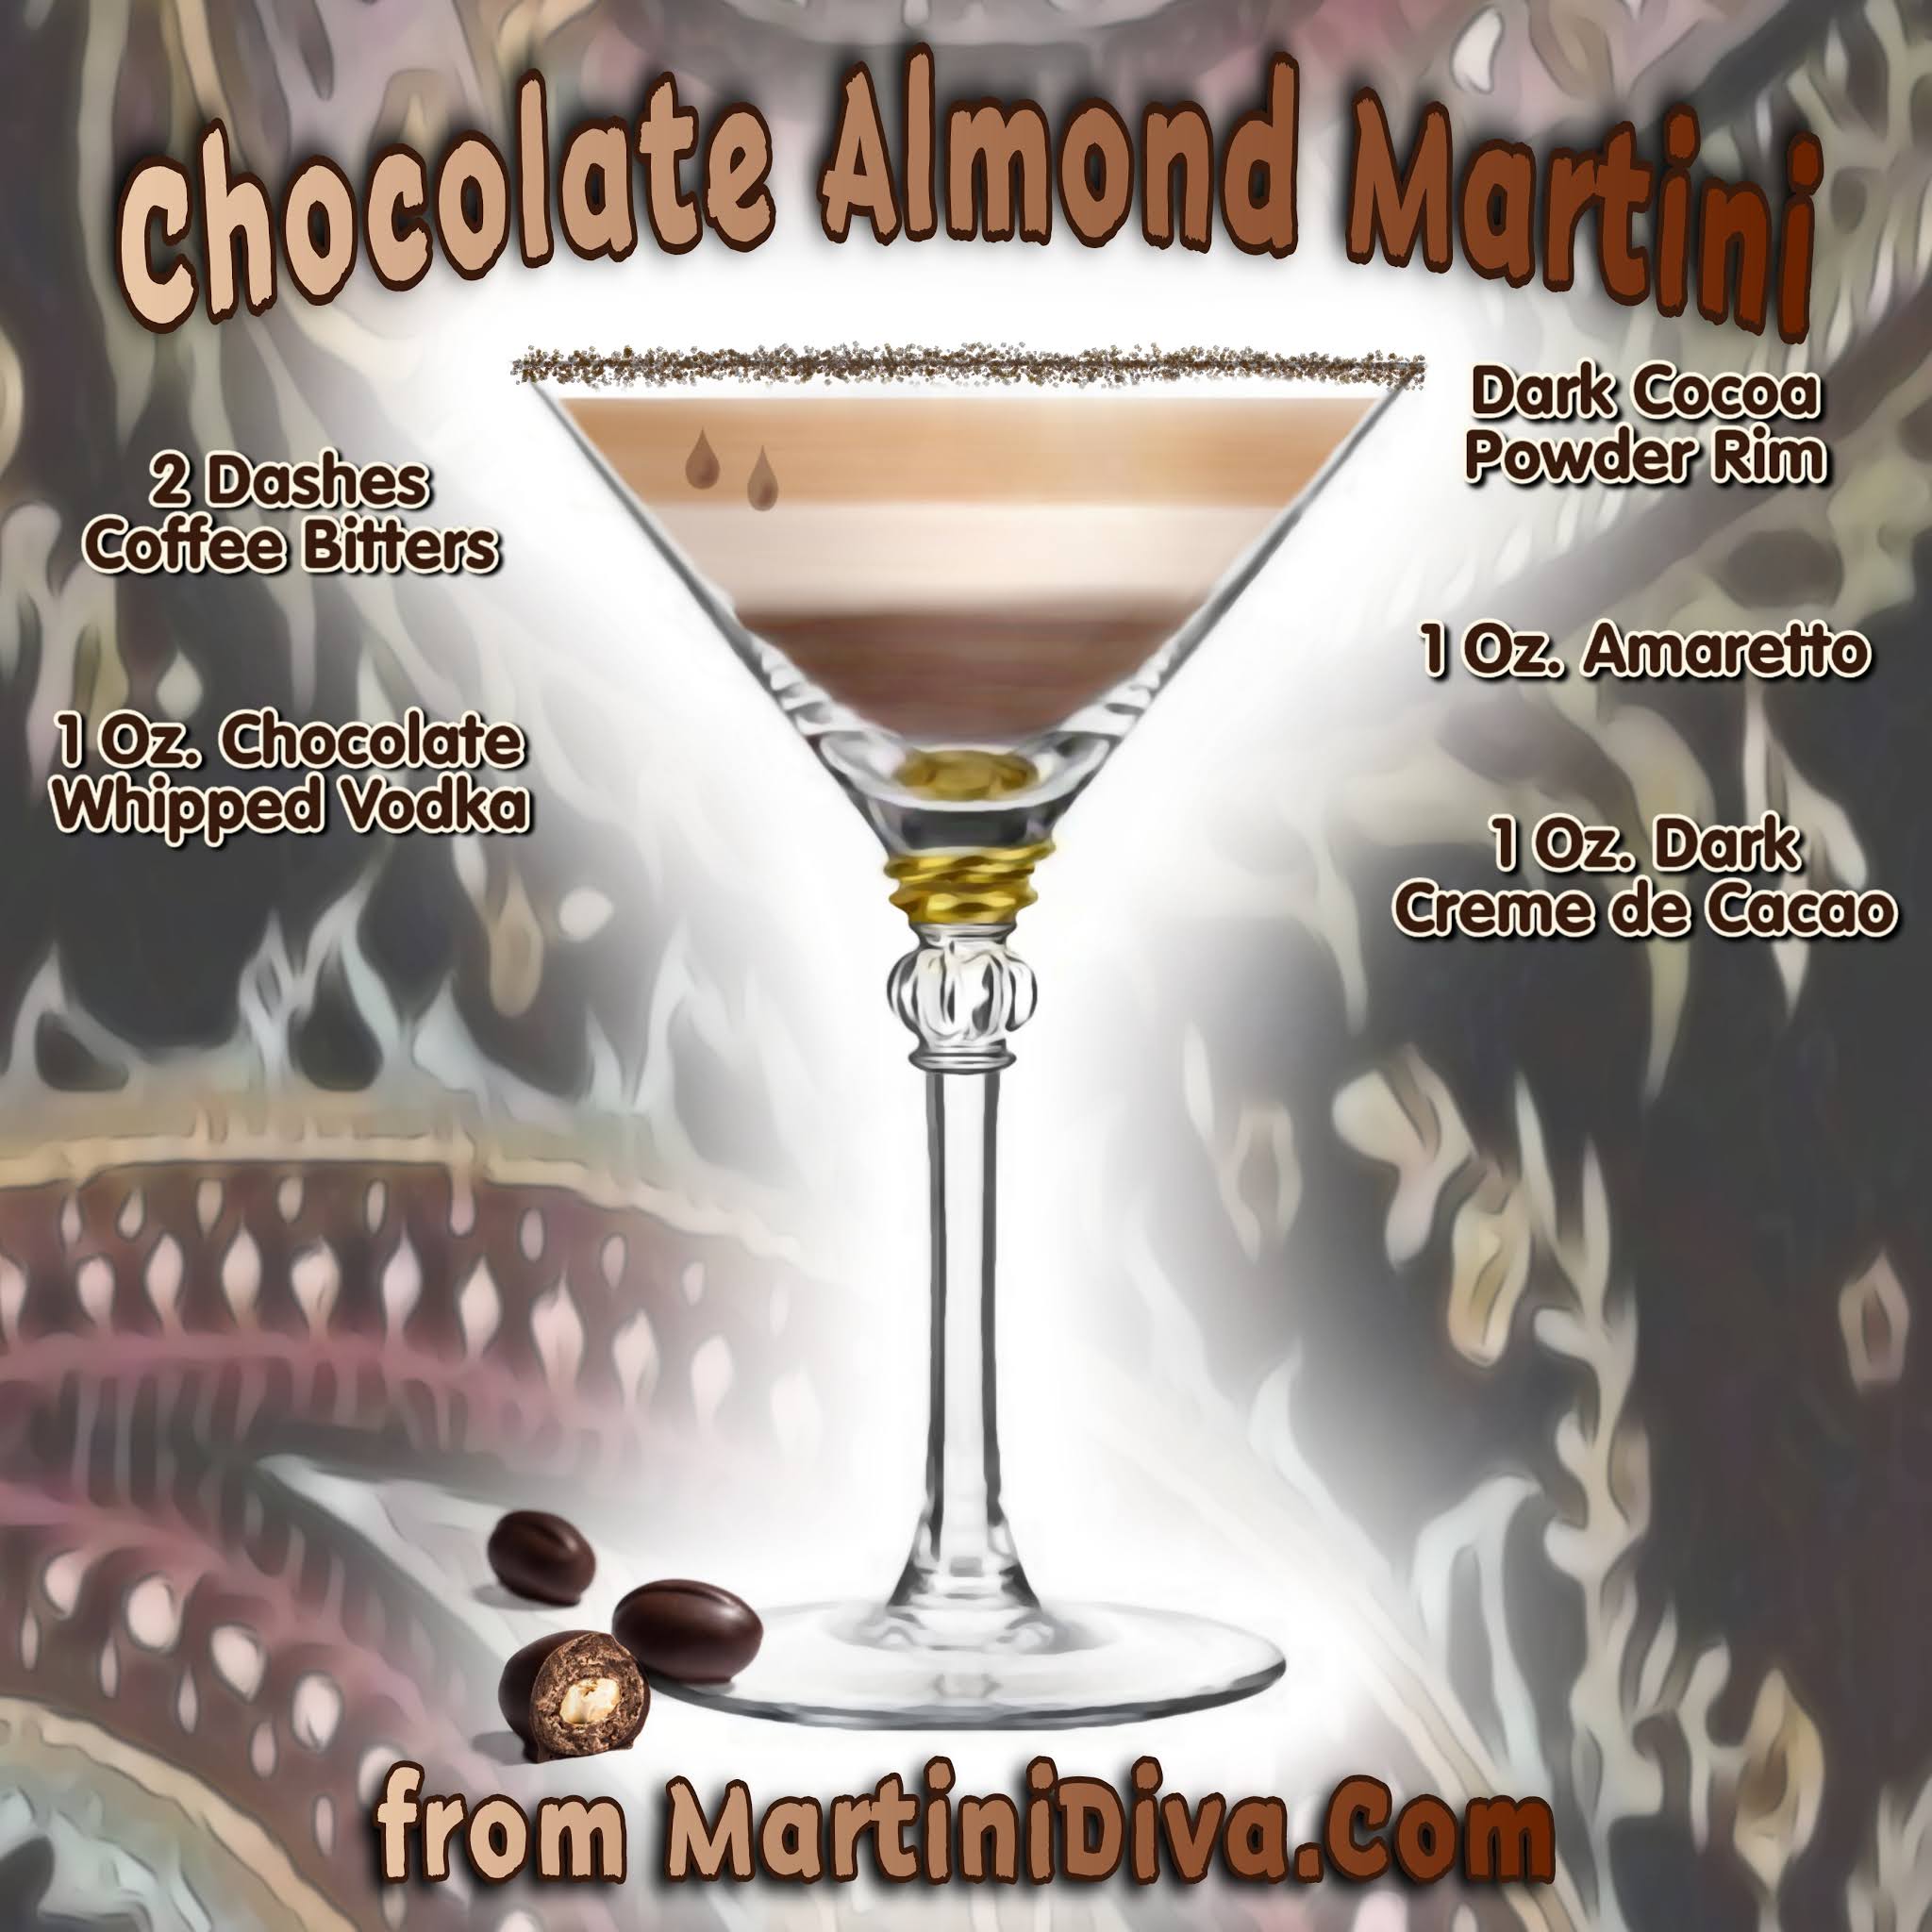 The MARTINI DIVA: Chocolate Almond Martini Cocktail Recipe